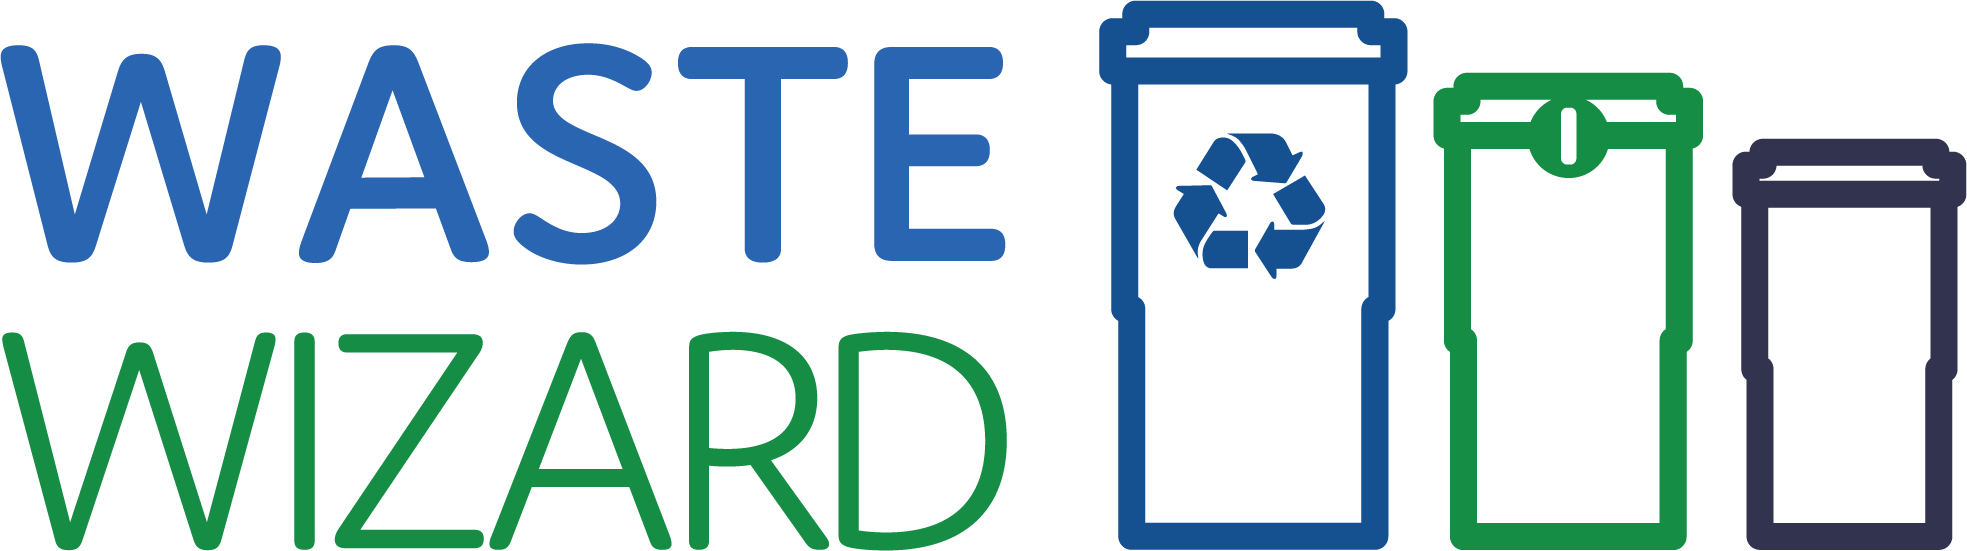 Waste Wizard logo